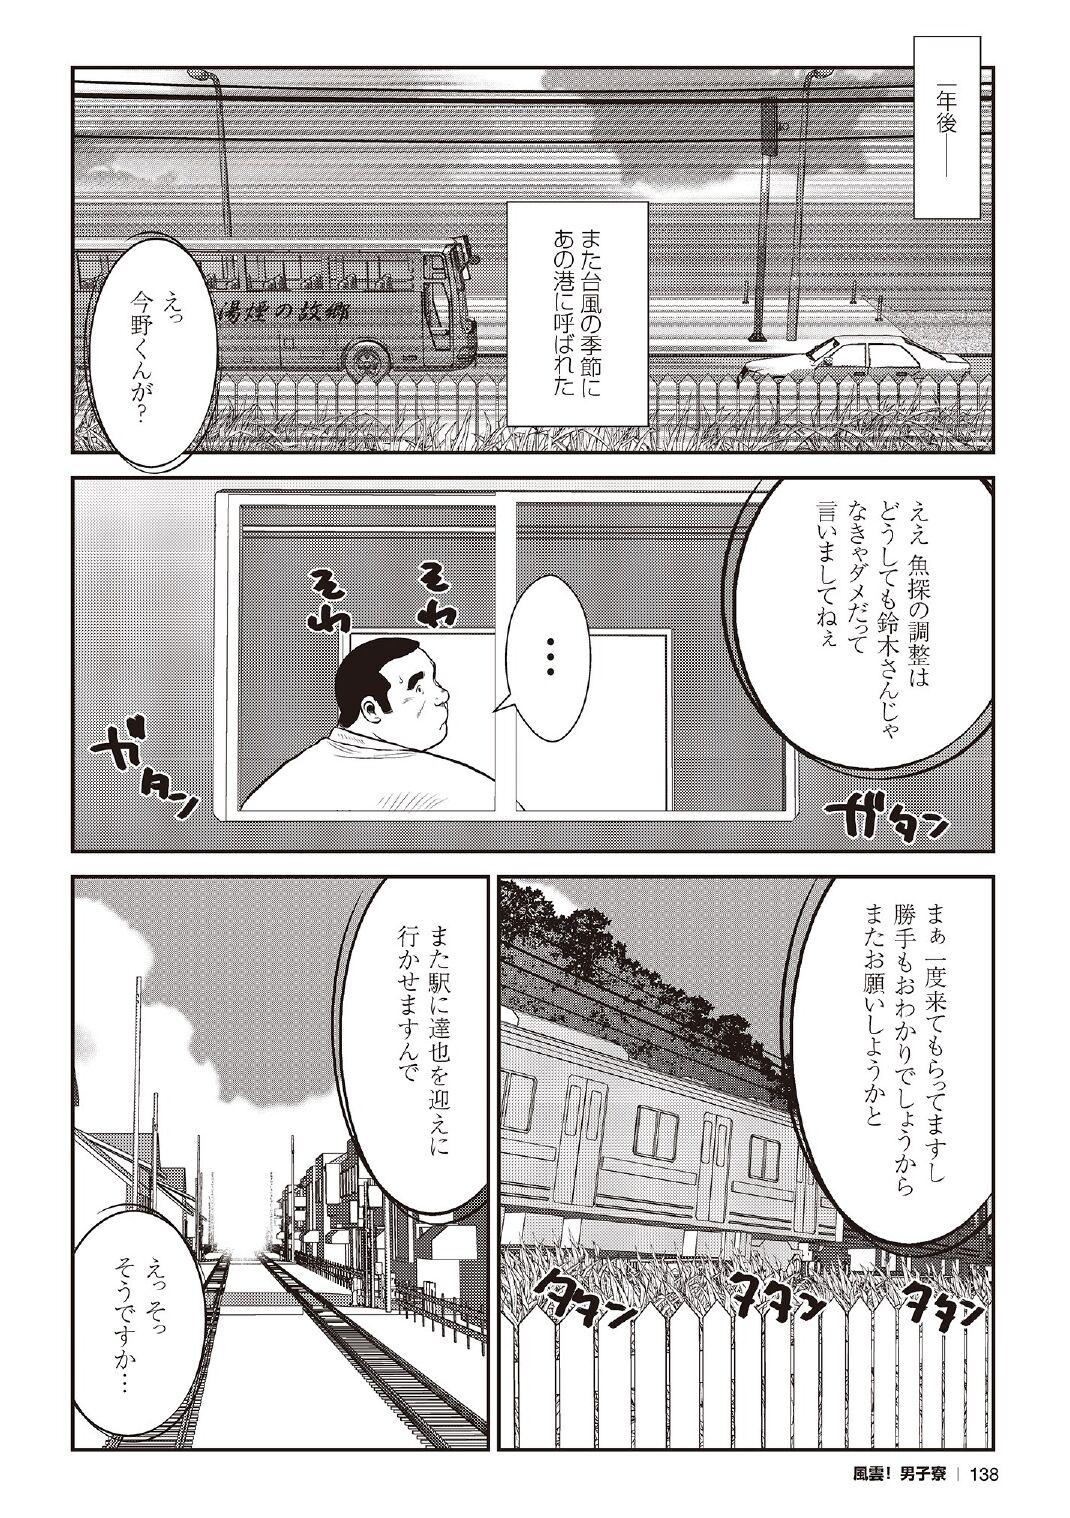 [Ebisubashi Seizou] Ebisubashi Seizou Tanpen Manga Shuu 2 Fuuun! Danshi Ryou [Bunsatsuban] PART 3 Bousou Hantou Taifuu Zensen Ch. 3 ~ Ch. 5 [Digital] 67